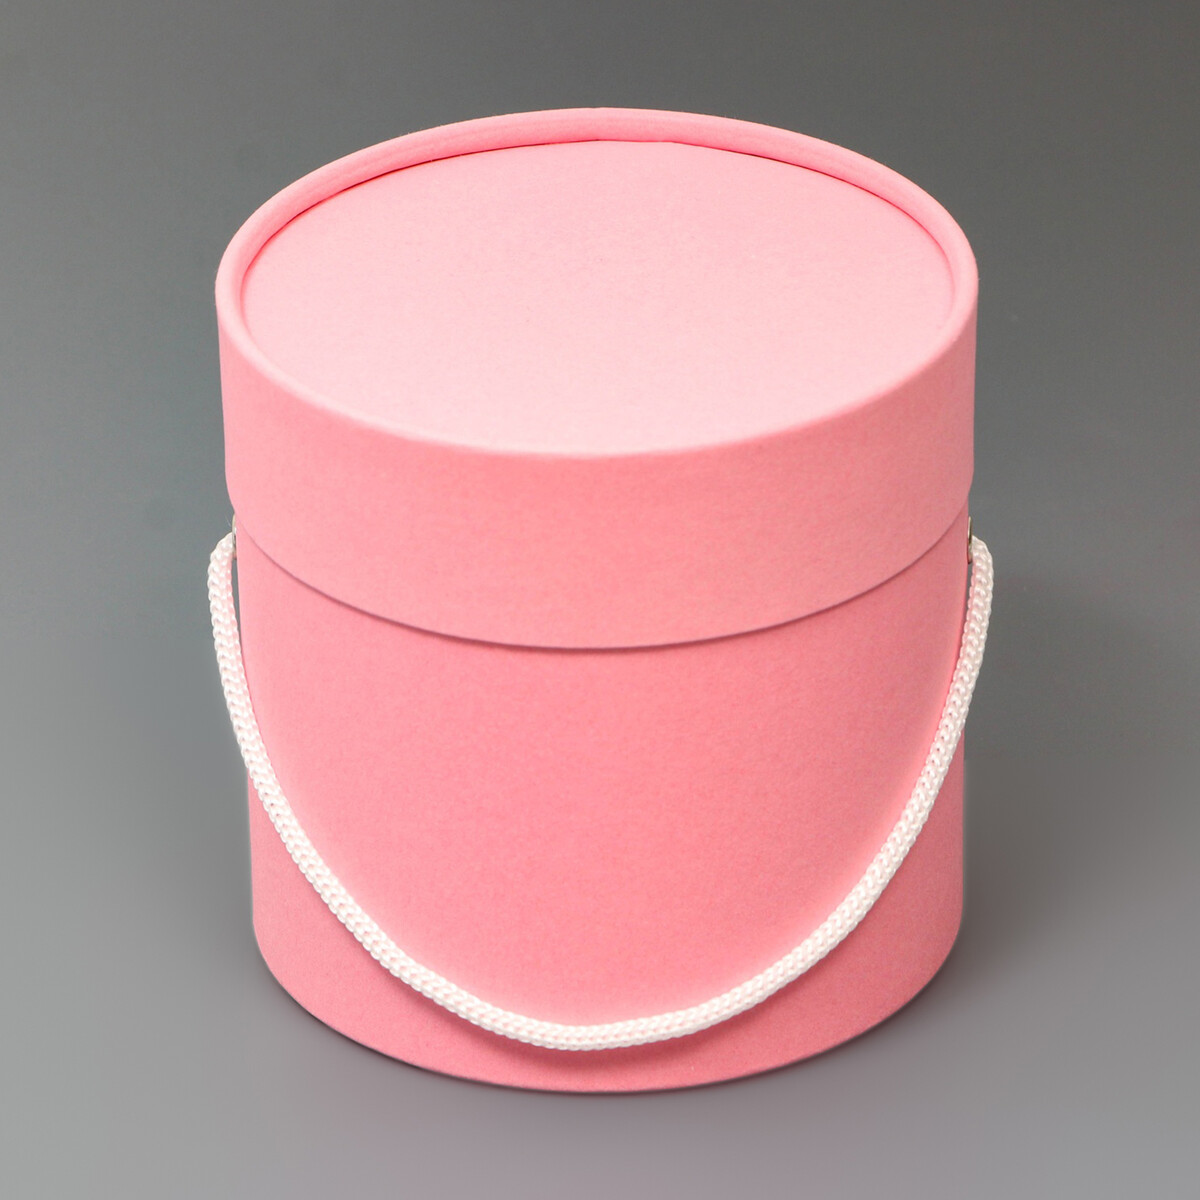 Подарочная коробка, круглая, розовая,с шнурком, 12 х 12 см круглая подарочная коробка